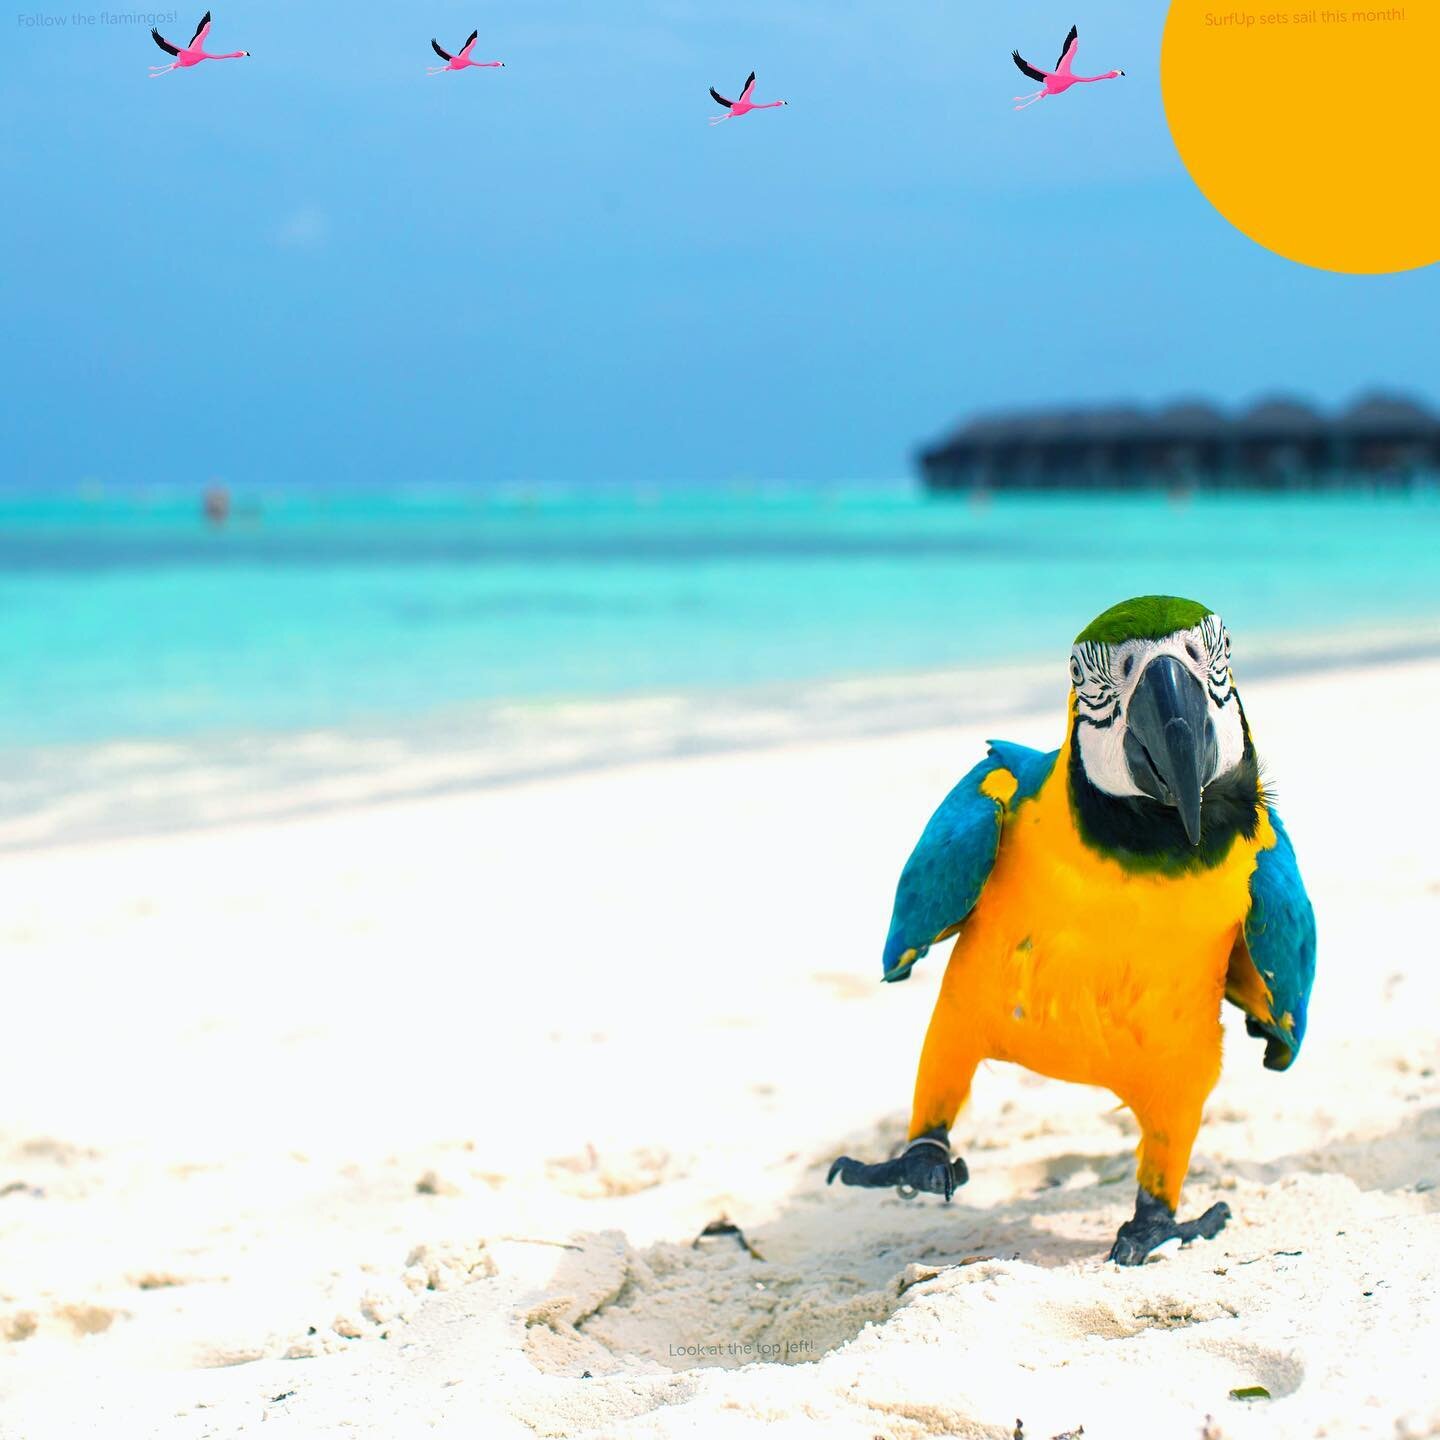 Happy August beach birds! Zoom into the parrot&rsquo;s shadow 🥳.

.
.
.

.
#beginnersurfer #rentsurfboards #surfboardrentals #learningtosurf surfup #surfsup🏄 #surfing #surflifestyle #beaching #beachvacation #sandiegosurfladies #sandiegosurfing #beg